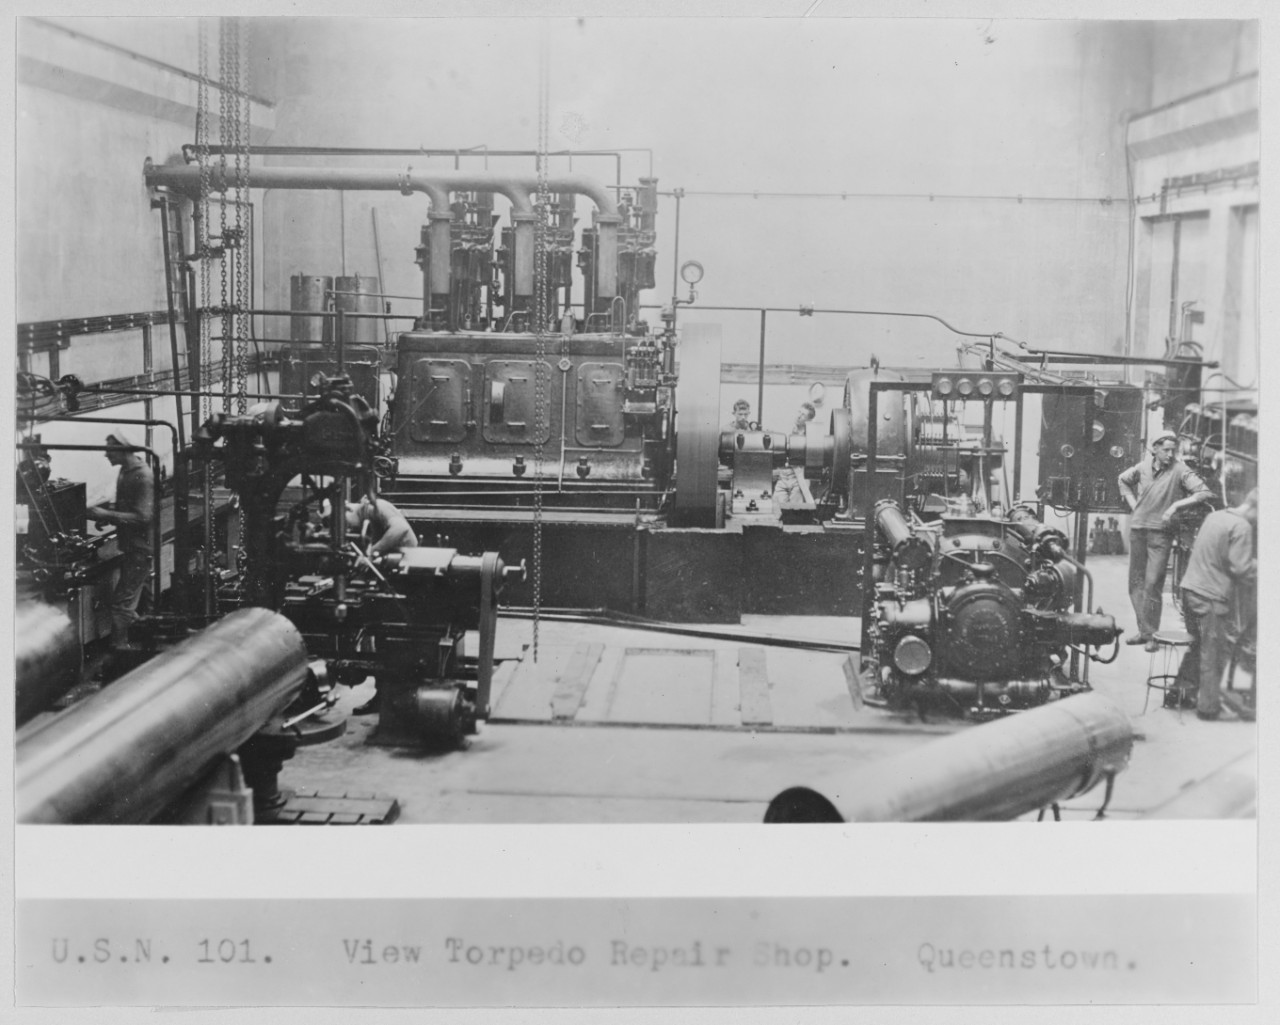 Torpedo repair shop